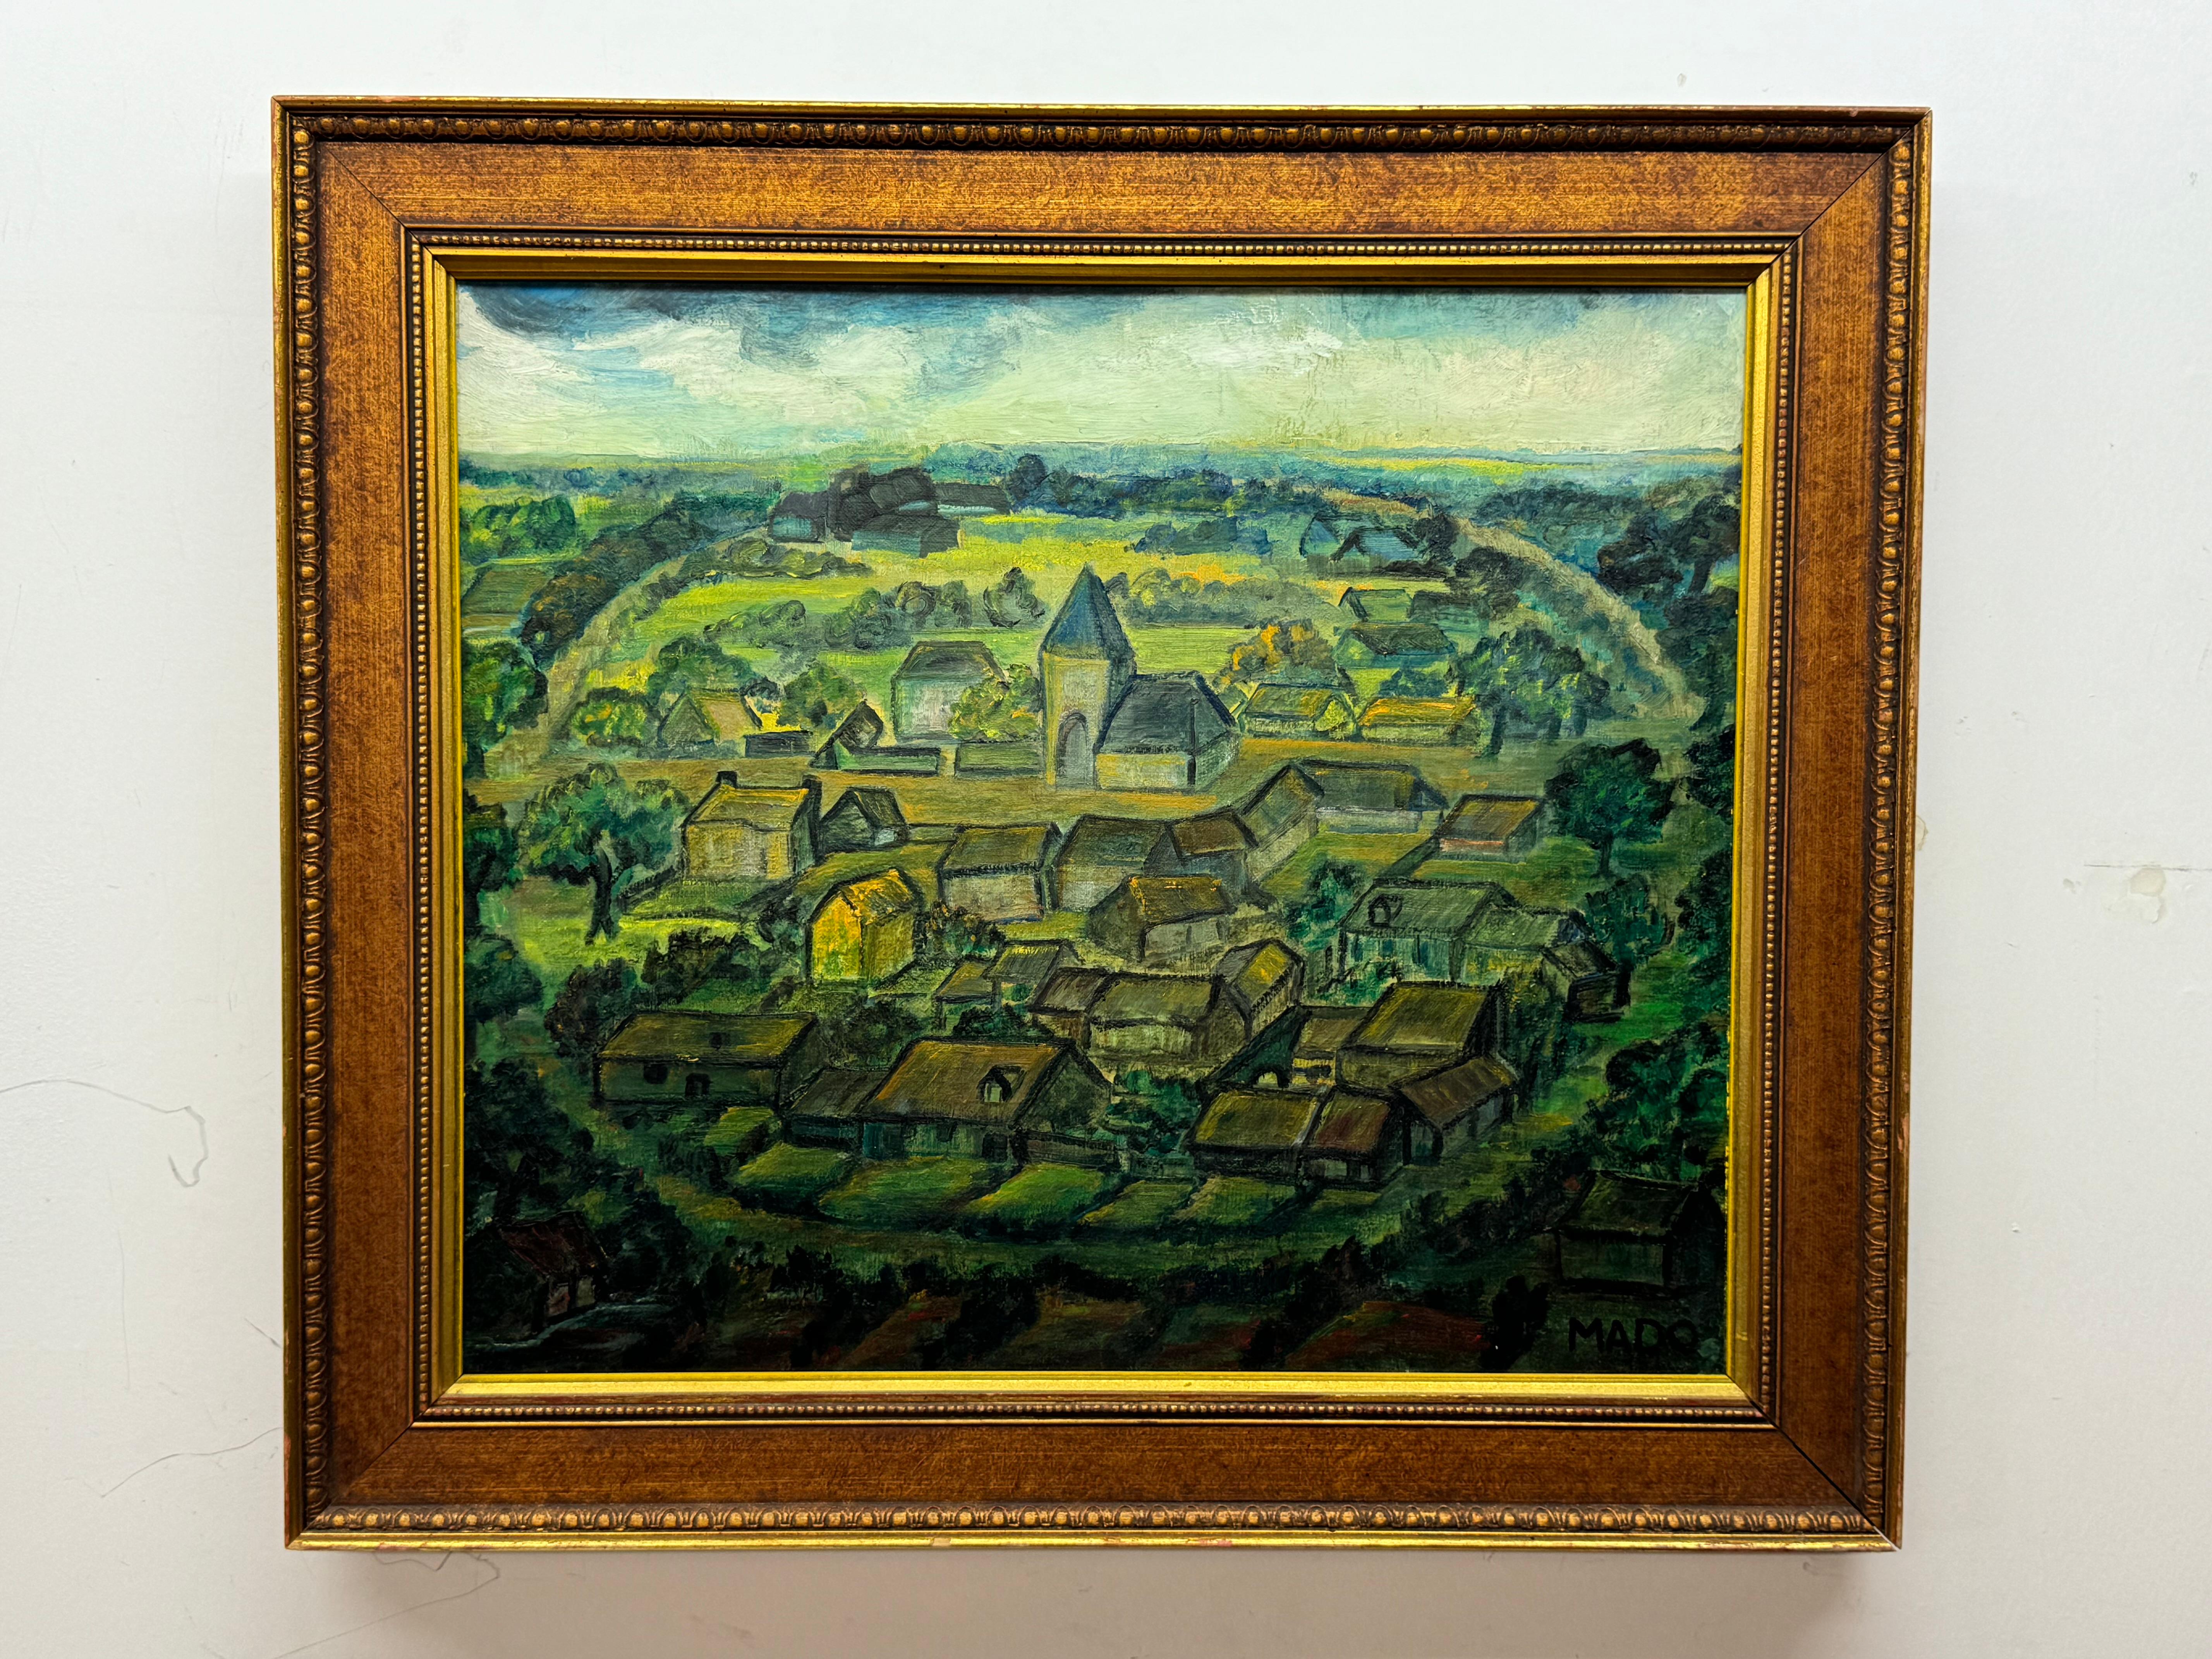 MADO Landscape Painting – Charmante Dorfszene in einem Stil, der an Cezanne erinnert